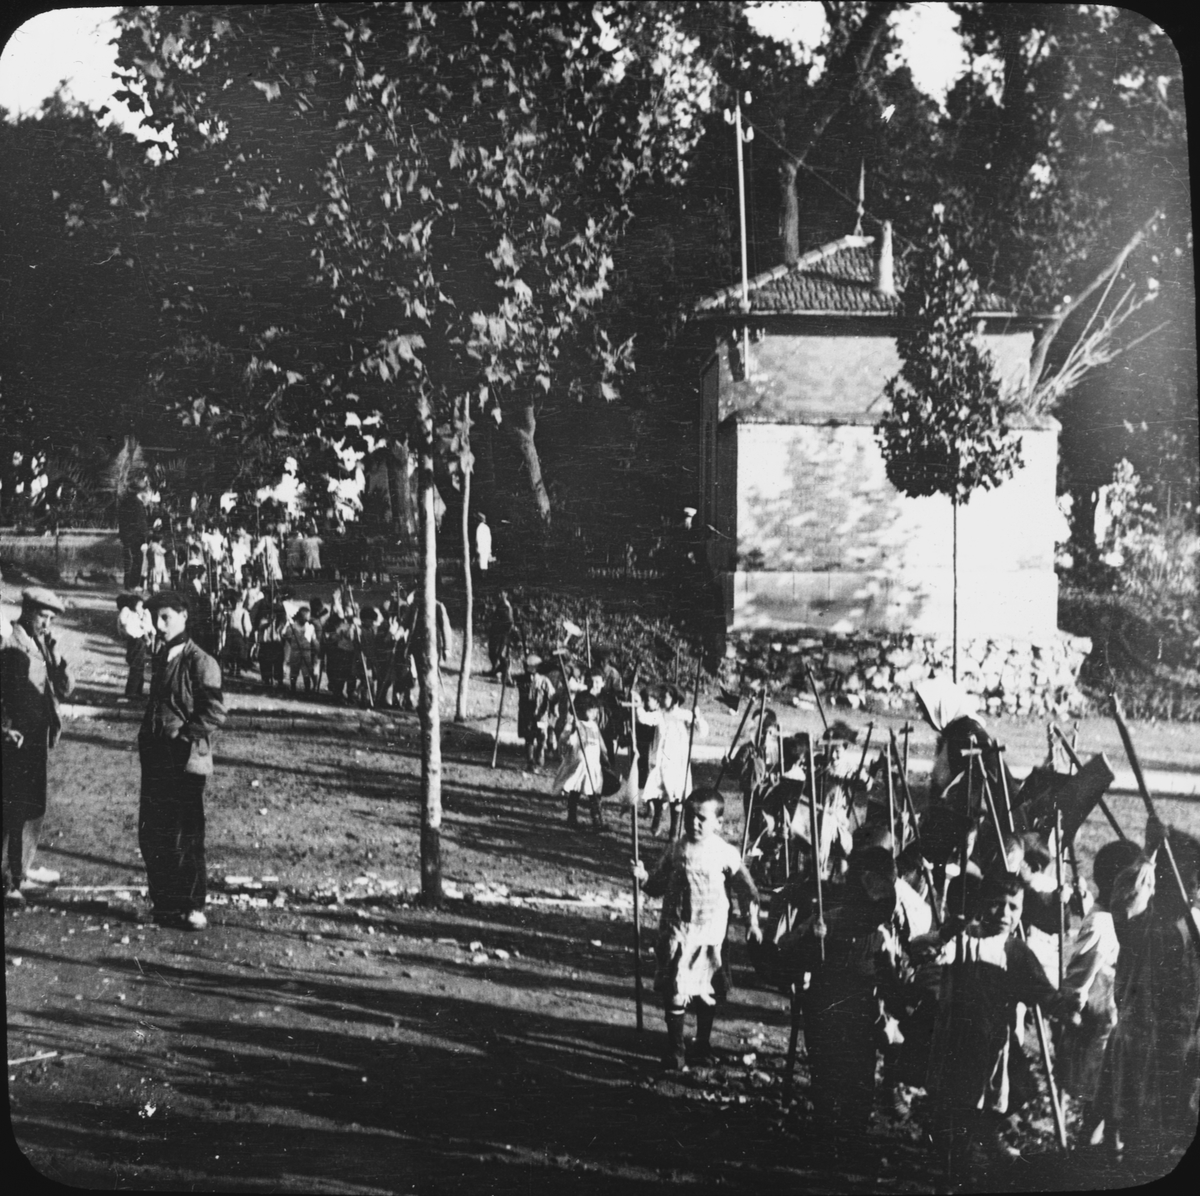 Skioptikonbild med motiv av barn i parad, bärande på kors.
Bilden har förvarats i kartong märkt: Granada 1910. Granada. N:12. Text på bild: "Repetilion tell feittog".